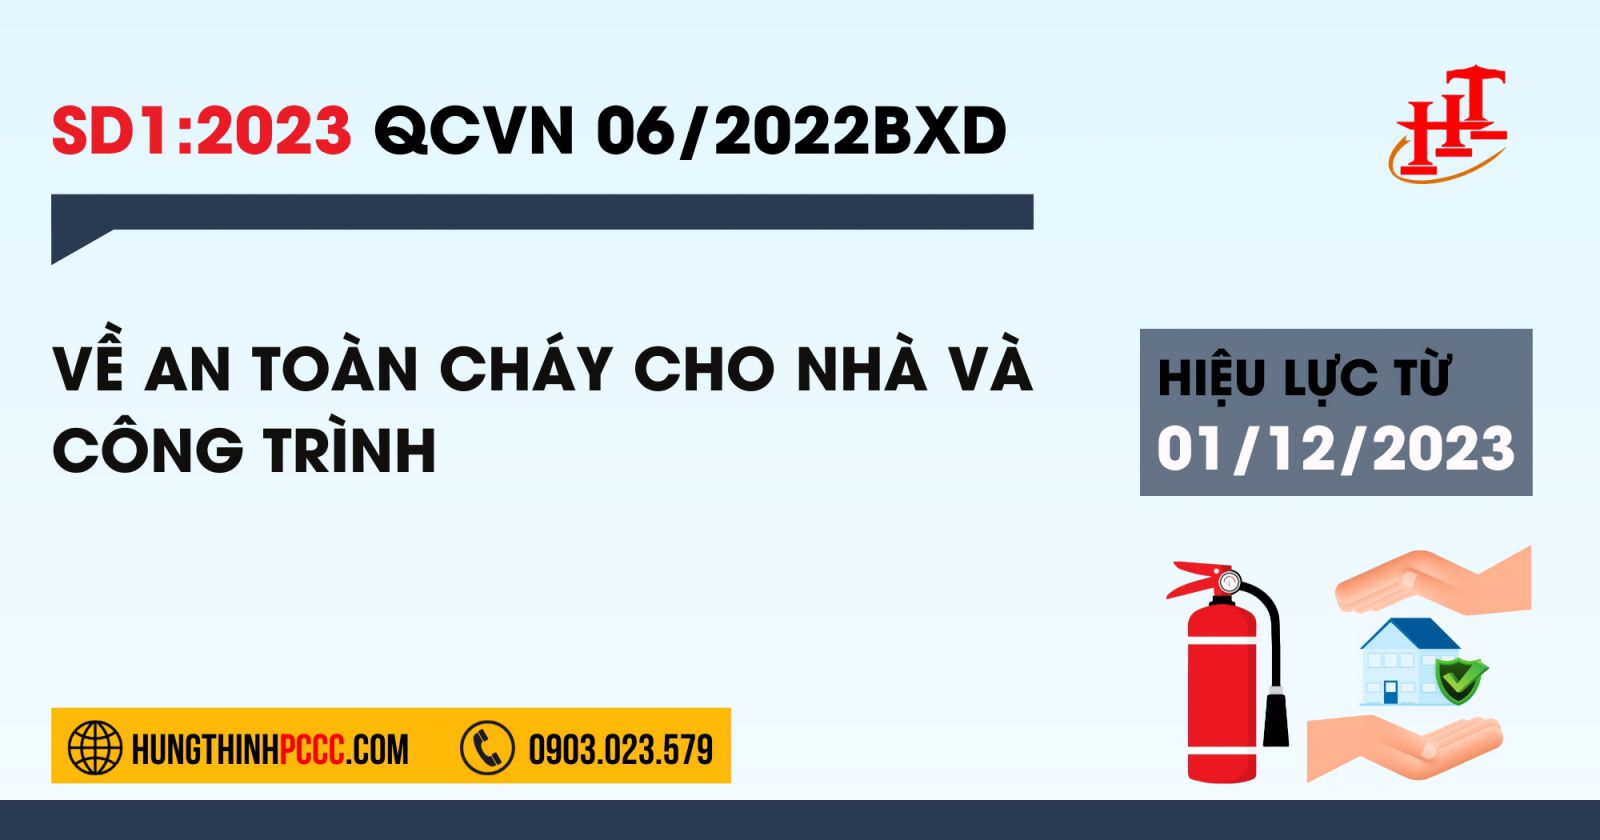 Sua-doi-1-2023-QCVN-06-2022